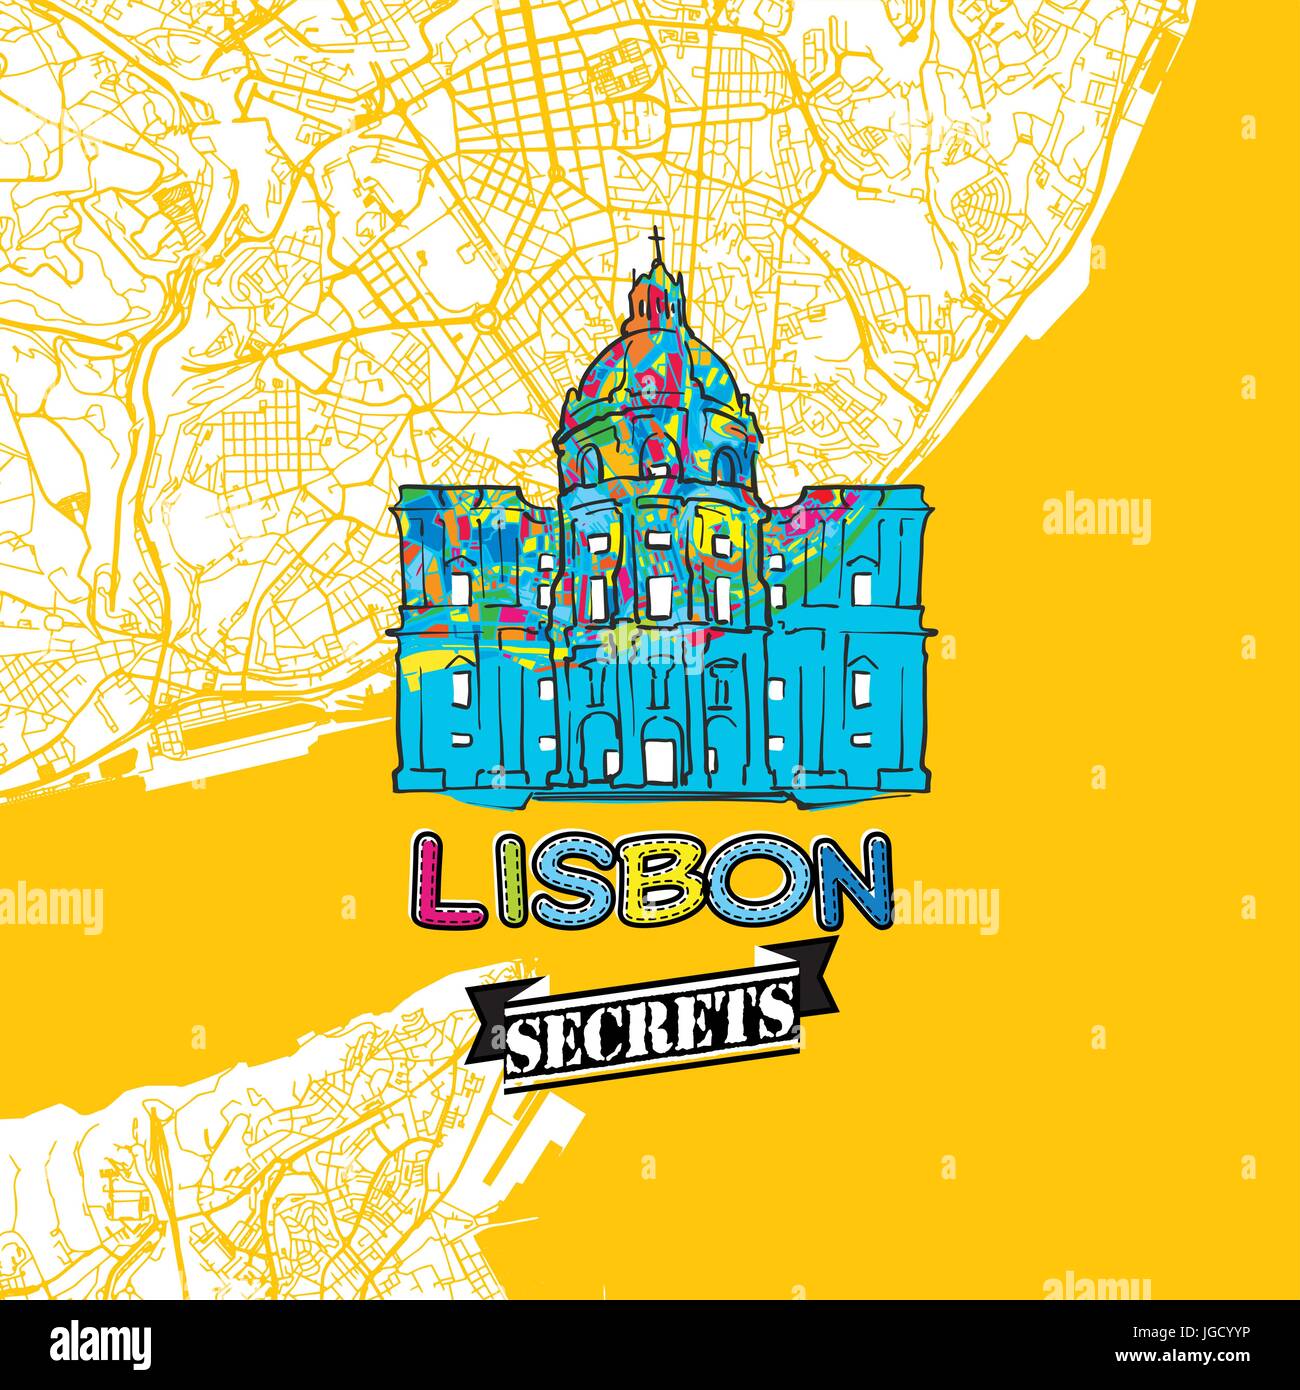 Lissabon reisen Geheimnisse Art Map für die Zuordnung von Experten und Reiseführer. Handgemachte Stadt Logo, Typo-Abzeichen und Hand gezeichnete Vektor-Bild an der Spitze sind gruppiert und Stock Vektor